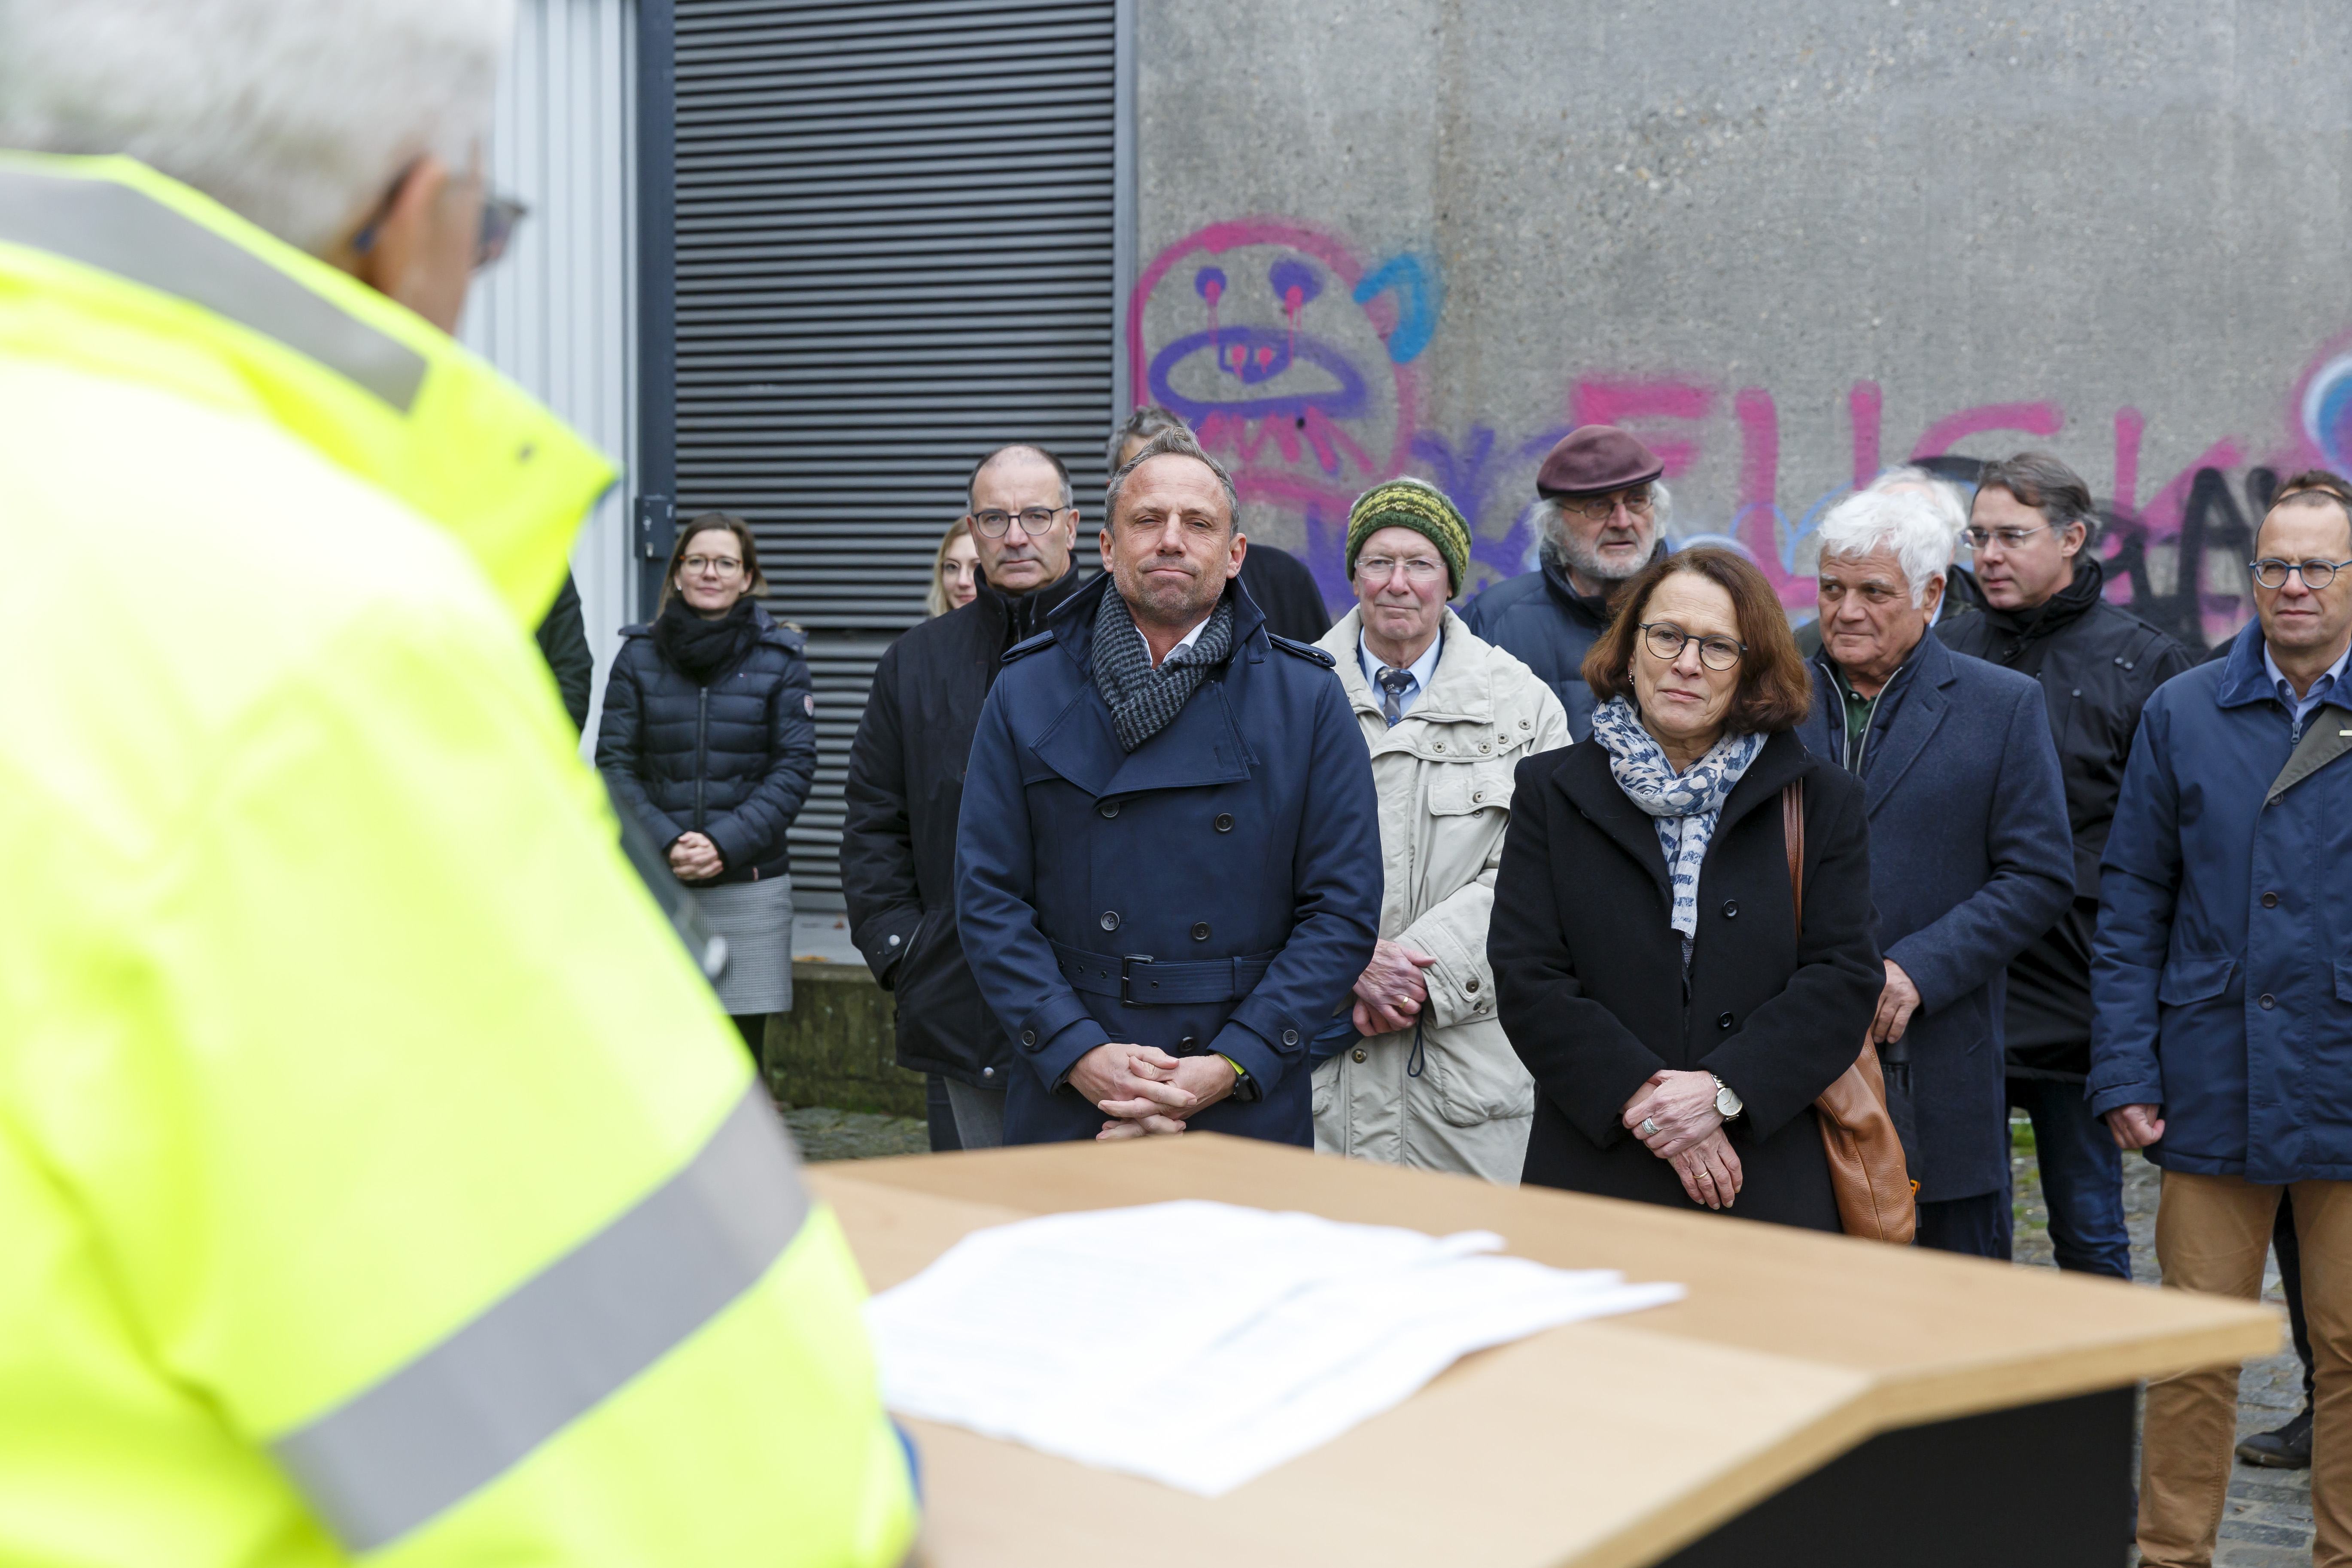 Links im Bild der Behördenleiter des WWAs am Rednerpult, daneben die zuhörenden Gäste. Im Hintergrund das mit Graffiti besprühte Widerlager der Nibelungenbrücke.